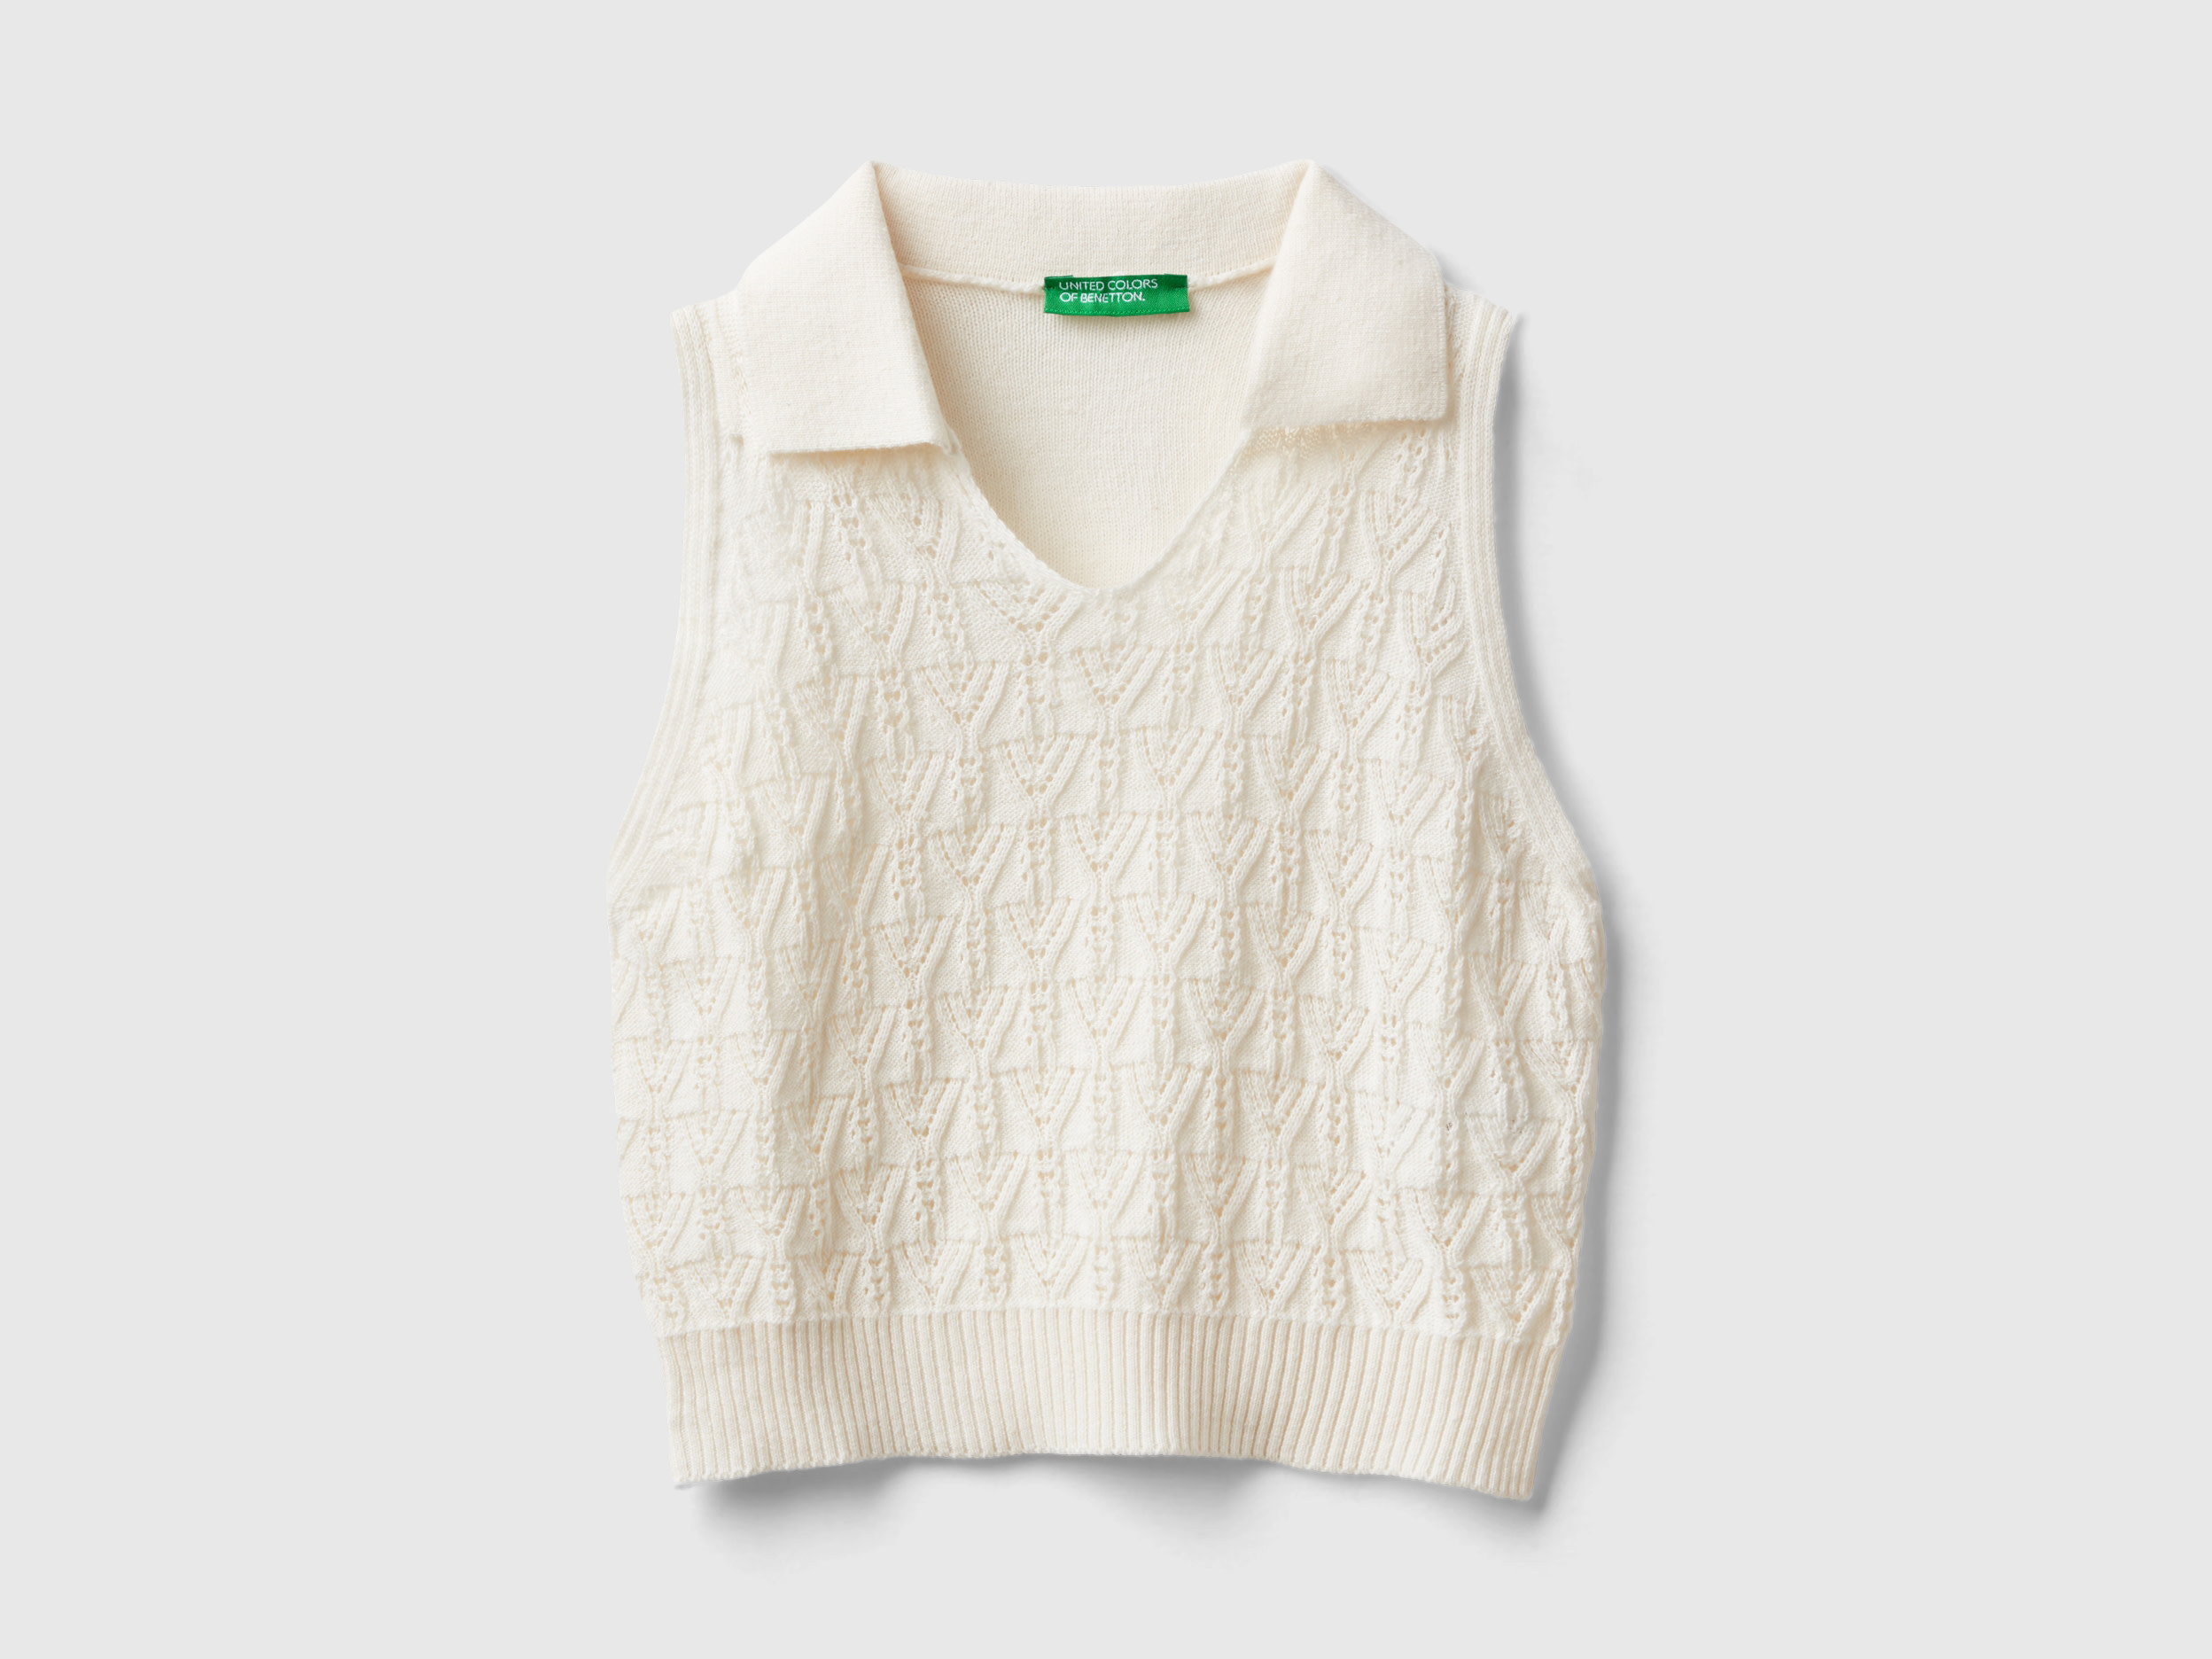 Image of Benetton, Polo-style Top, size XL, Creamy White, Kids